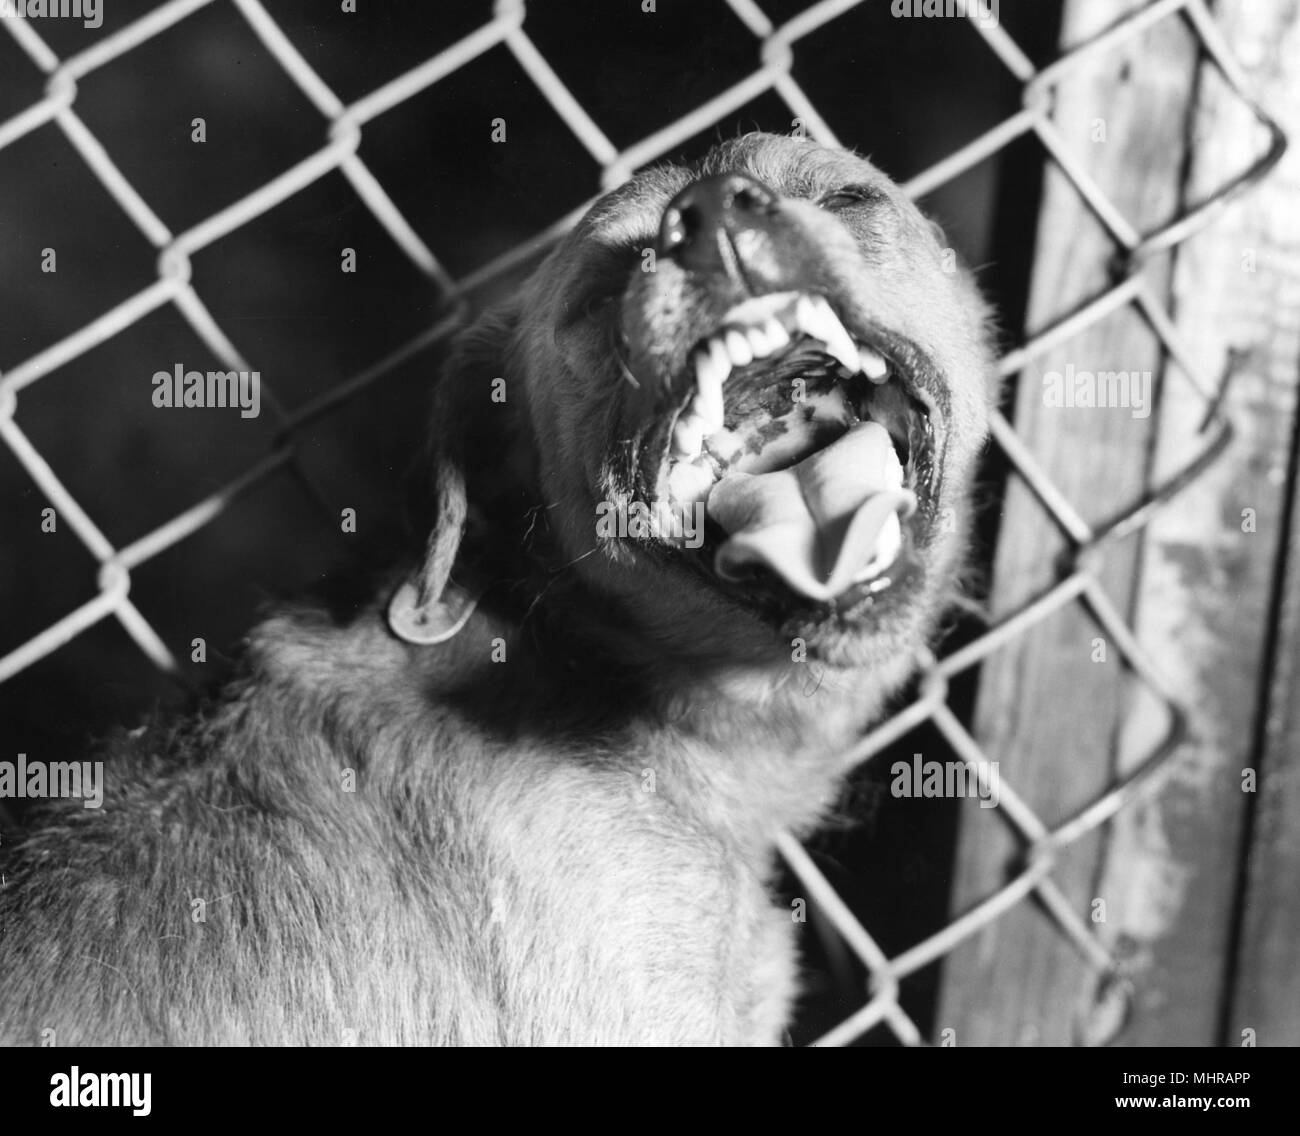 Il comportamento aggressivo di un canino in gabbia, sospettata di rabbioso, 1980. Immagine cortesia di centri per il controllo delle malattie (CDC). () Foto Stock